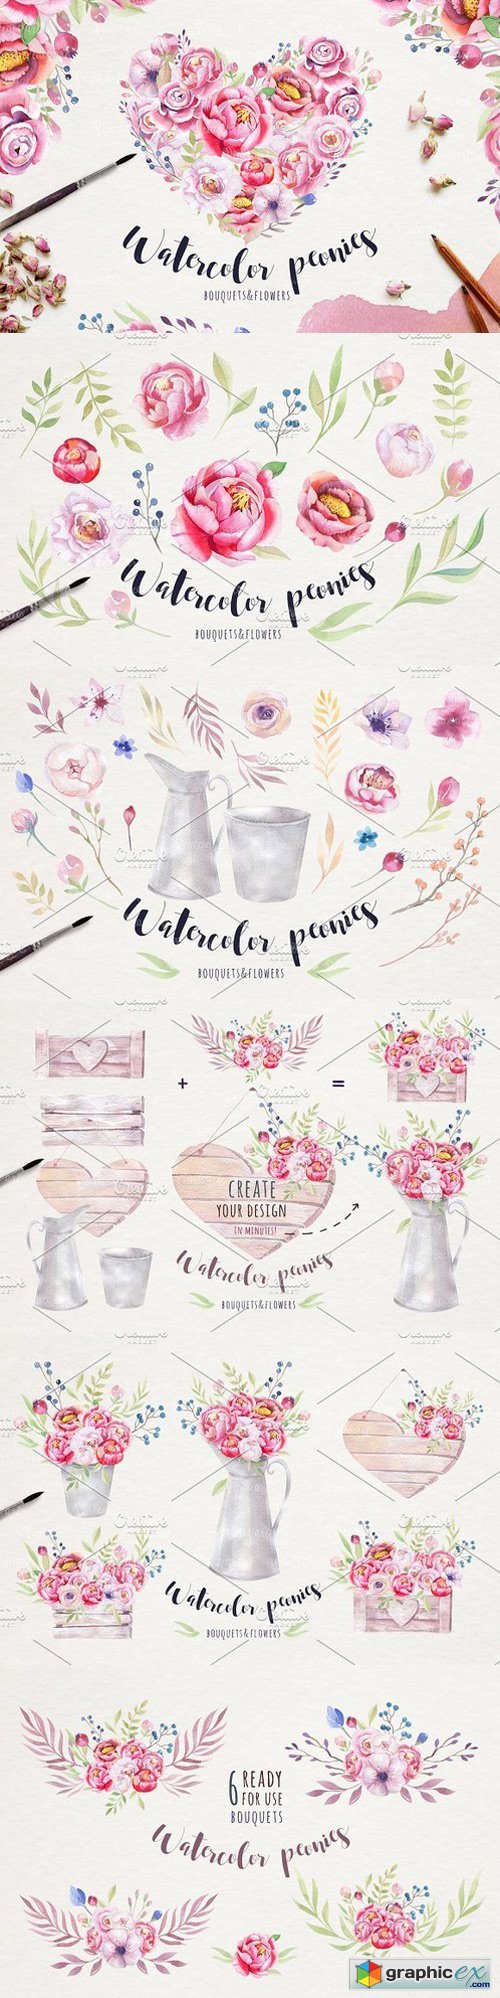 Watercolor peonies & floral